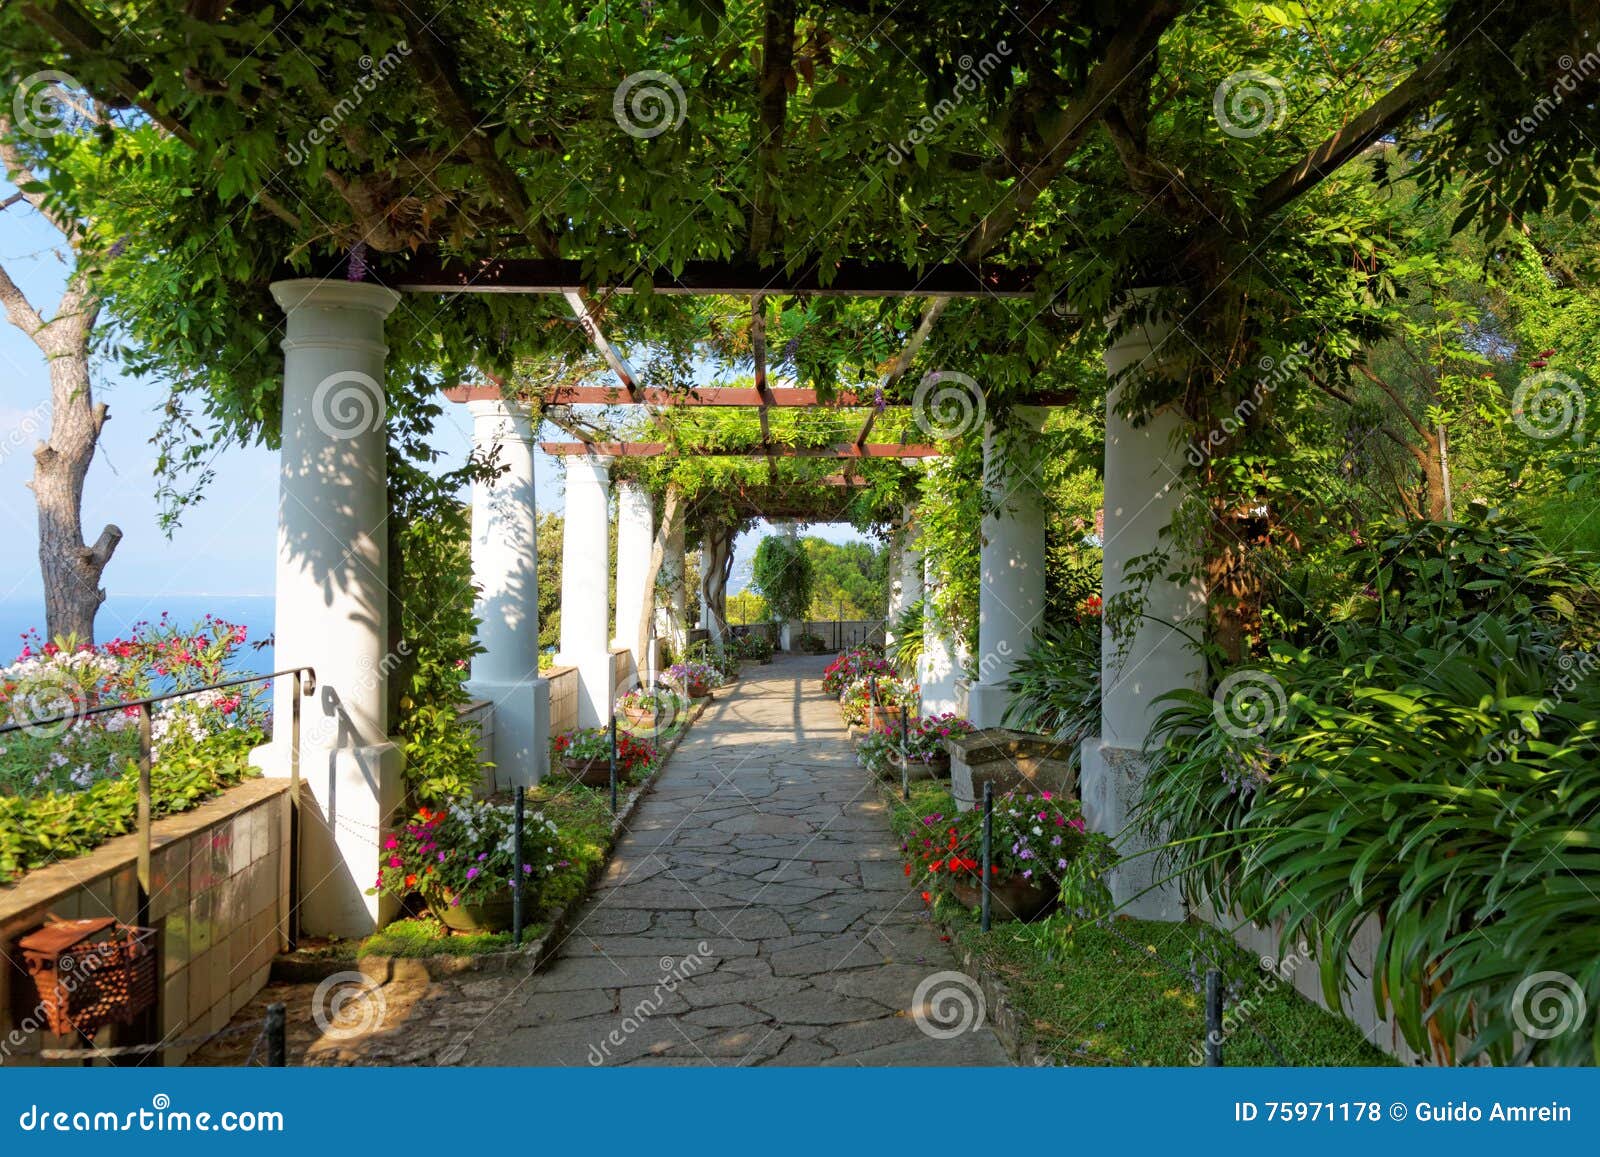 the public gardens of the villa san michele, capri island, mediterranean sea, italy